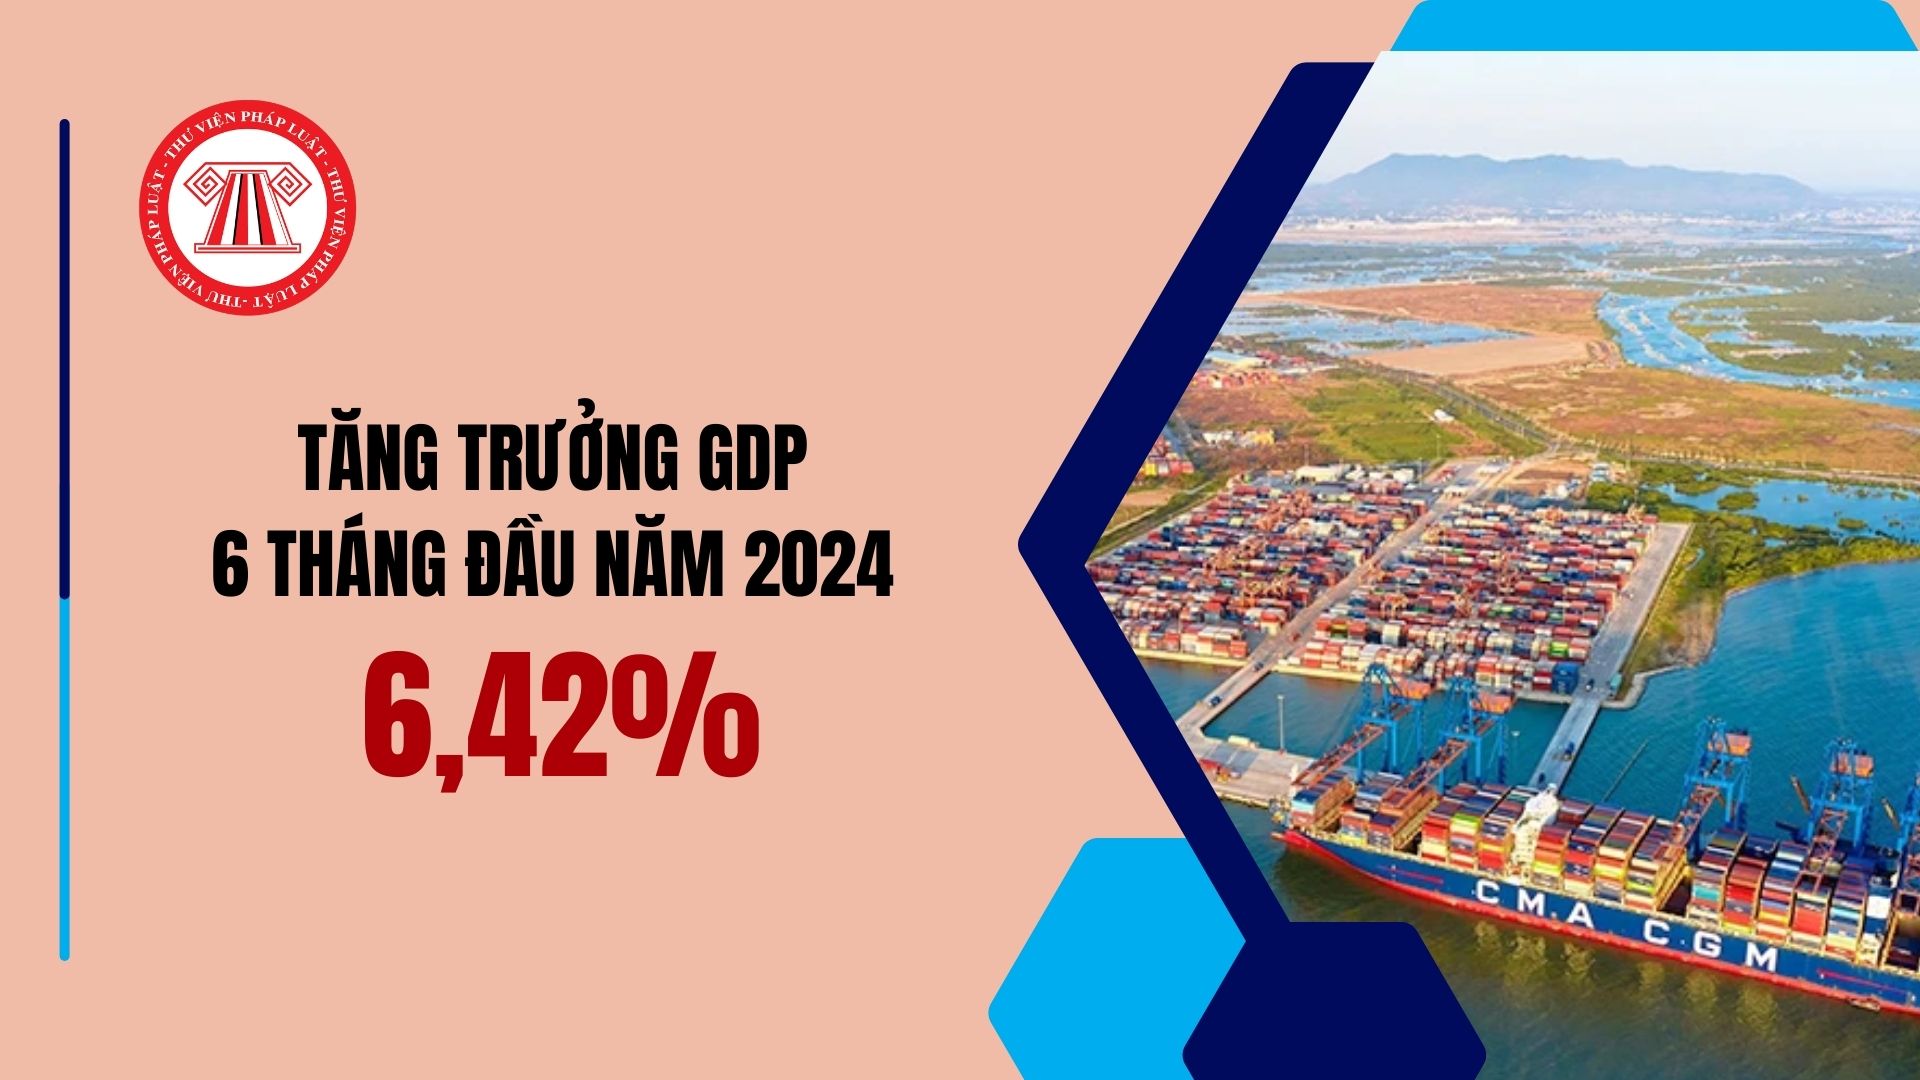 Tăng trưởng GDP 6 tháng đầu năm 2024 đạt 6,42%